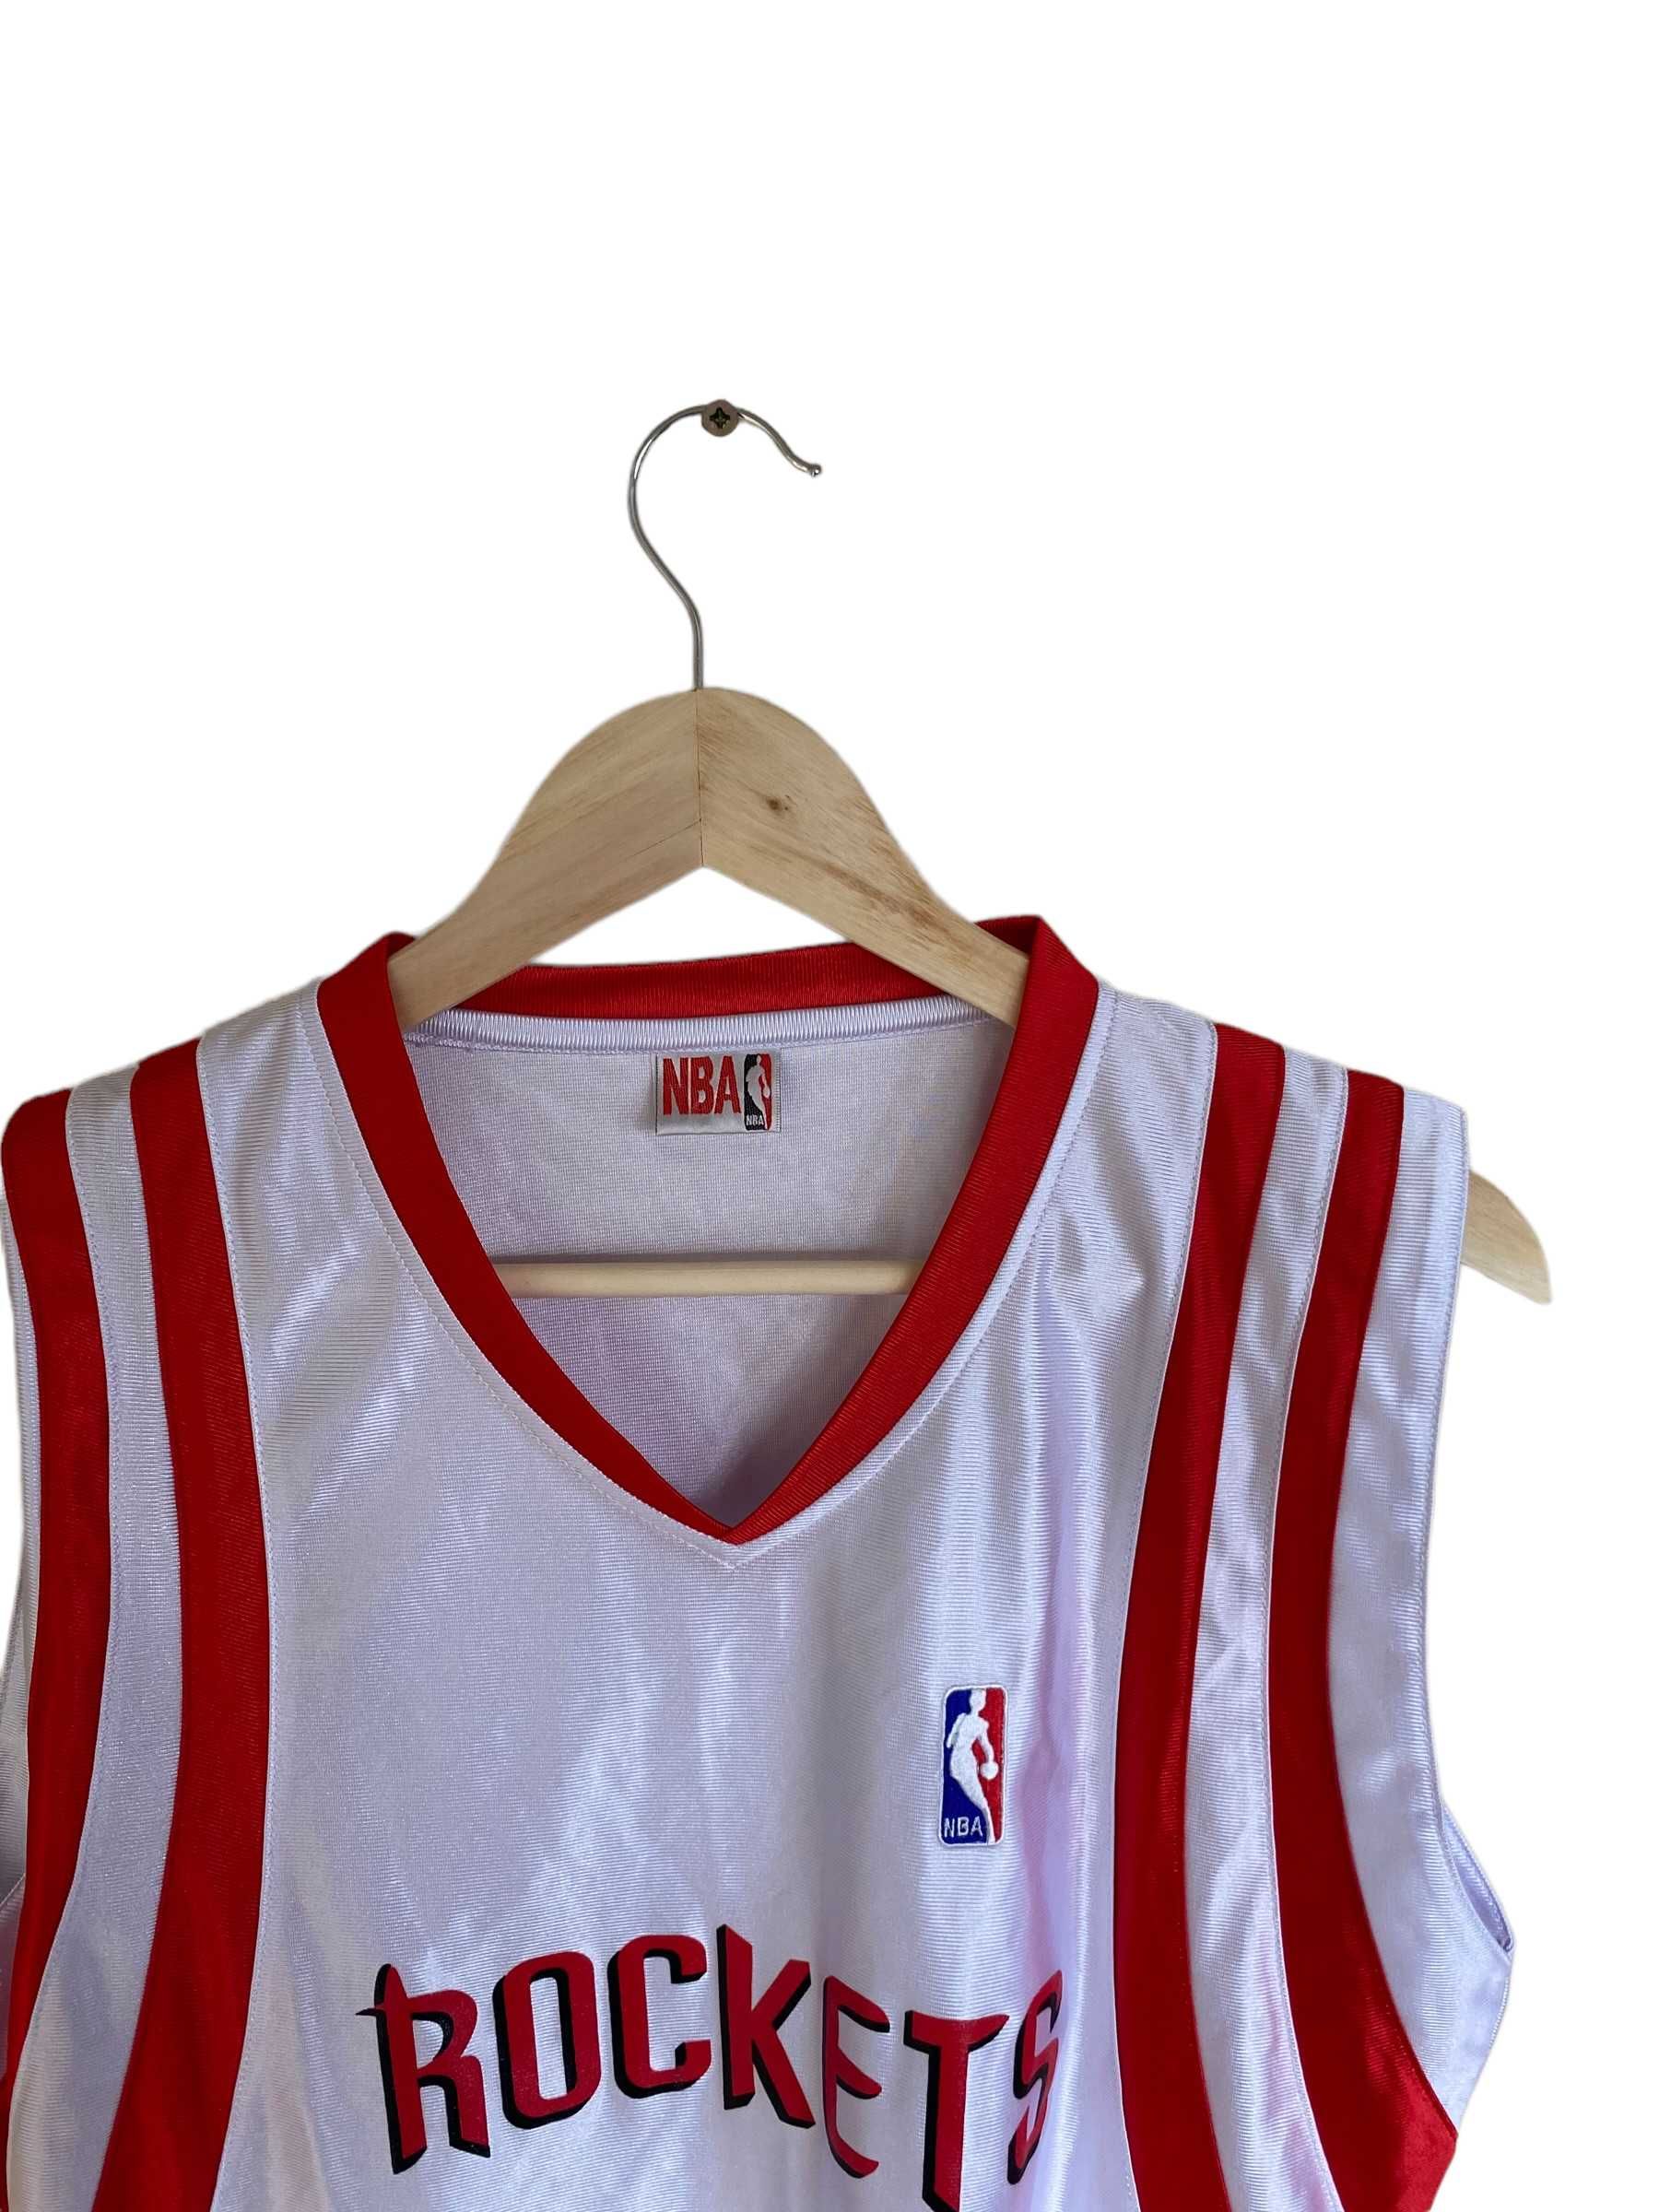 Houston Rockets NBA jersey, rozmiar L, stan bardzo dobry